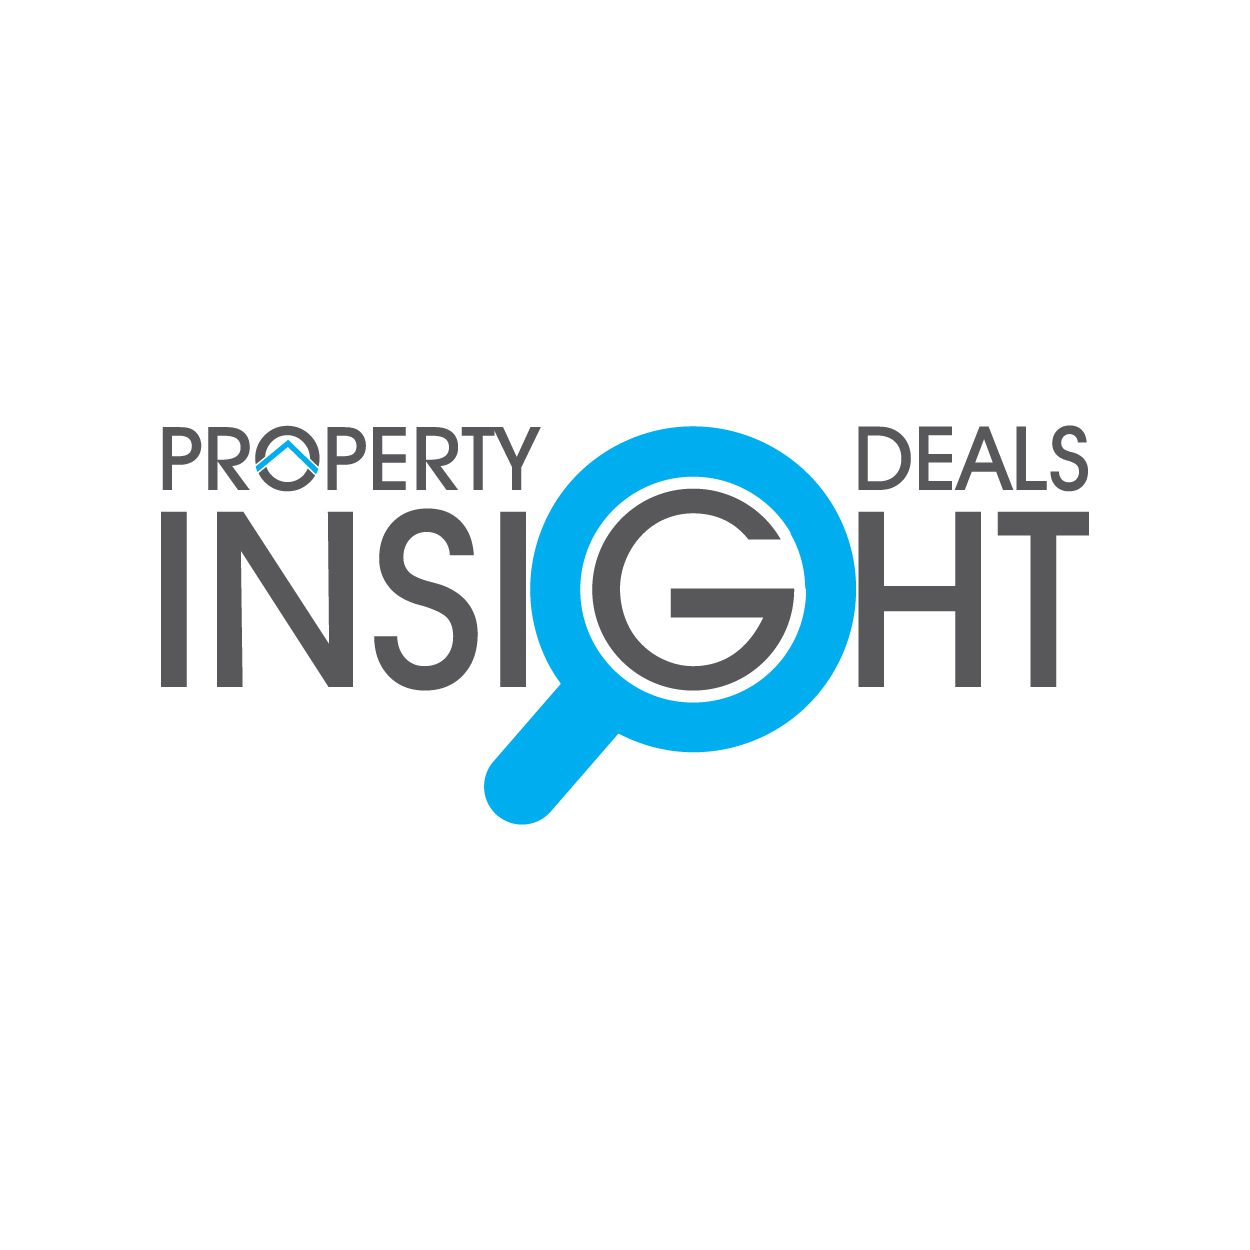 Property Deals Insight